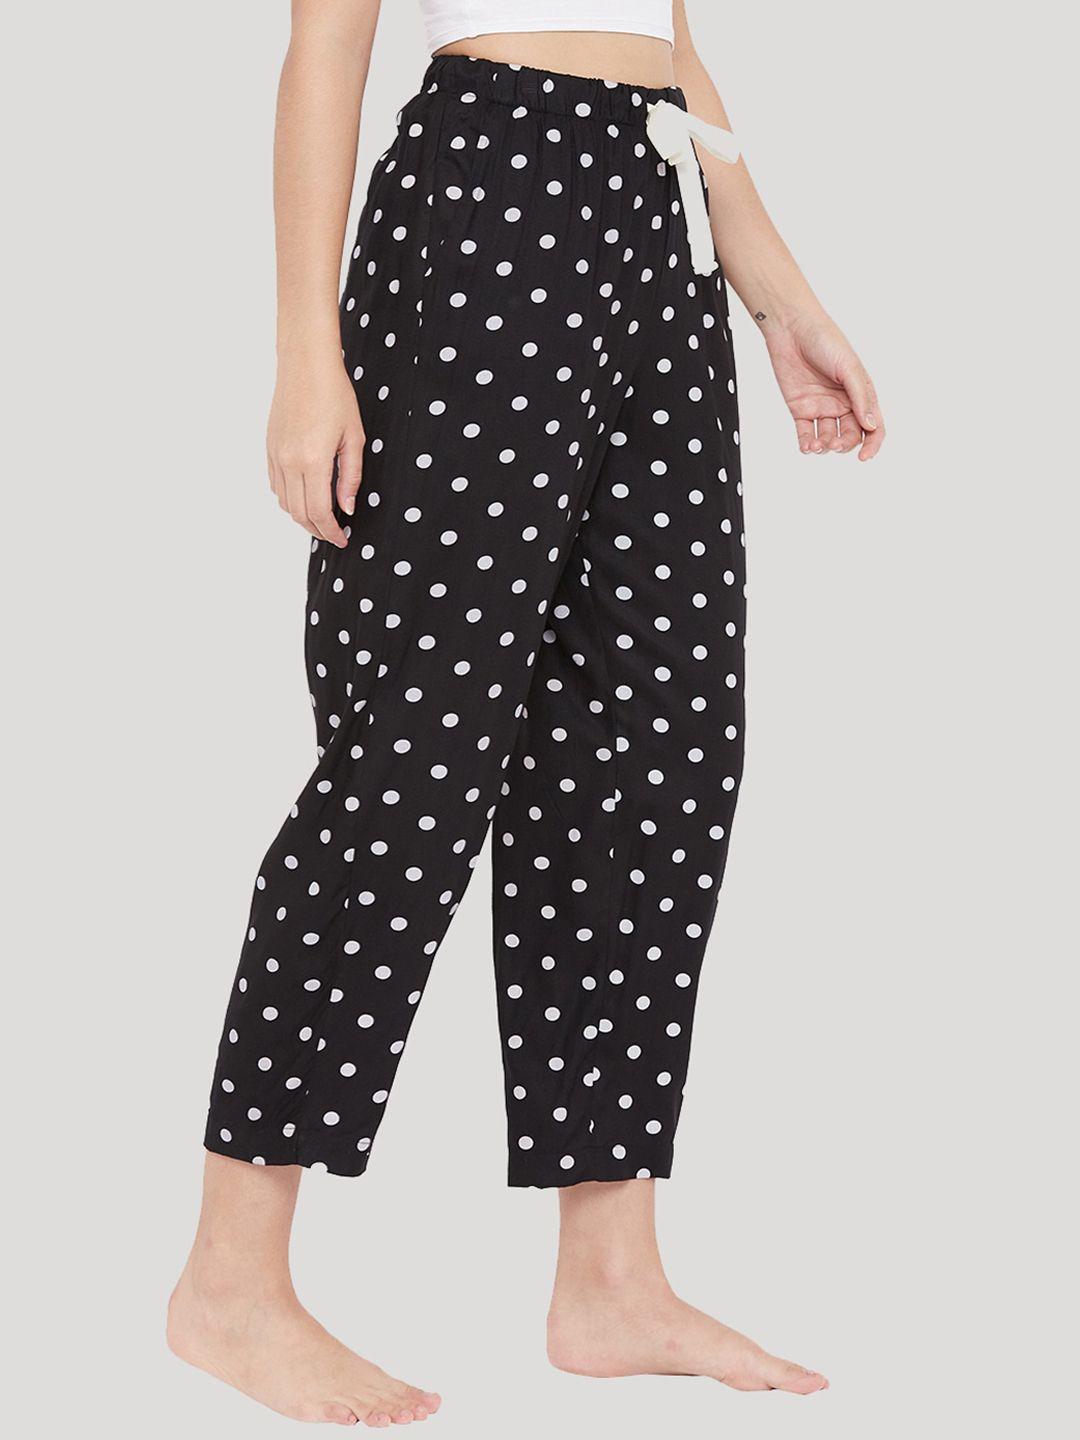 style shoes women black & white polka dots printed cotton lounge pants